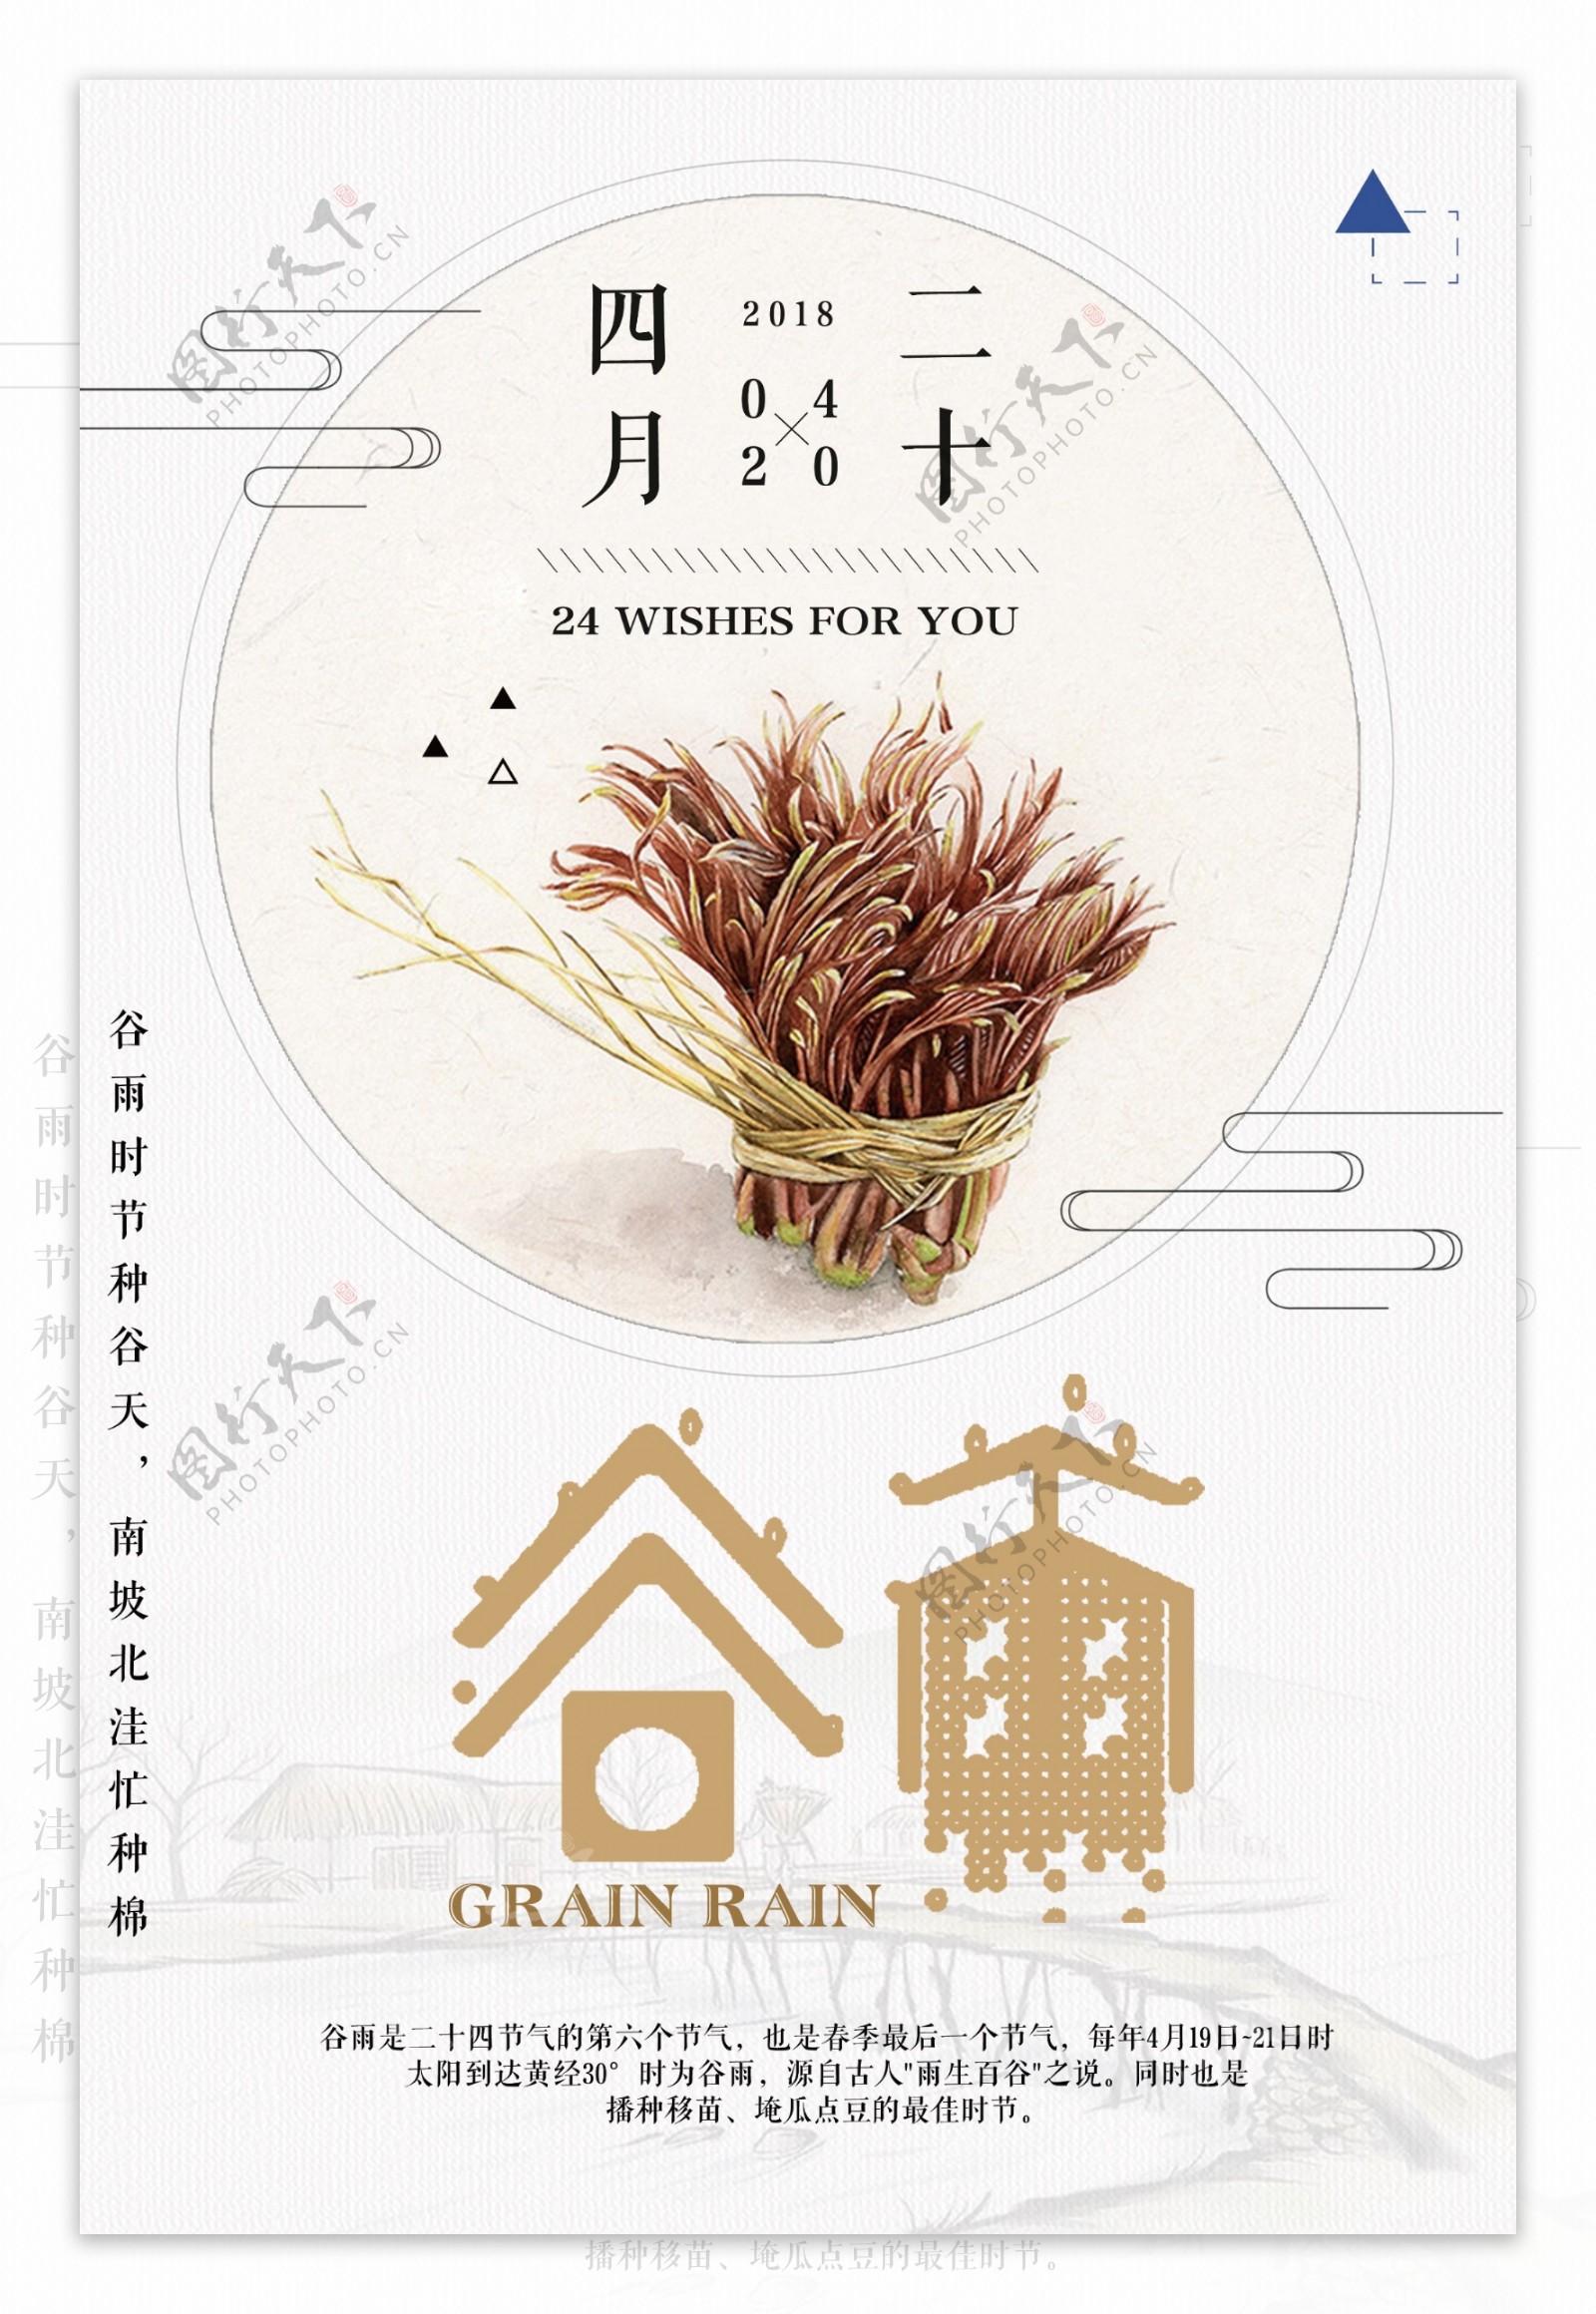 简约中国传统节气谷雨免费模板设计